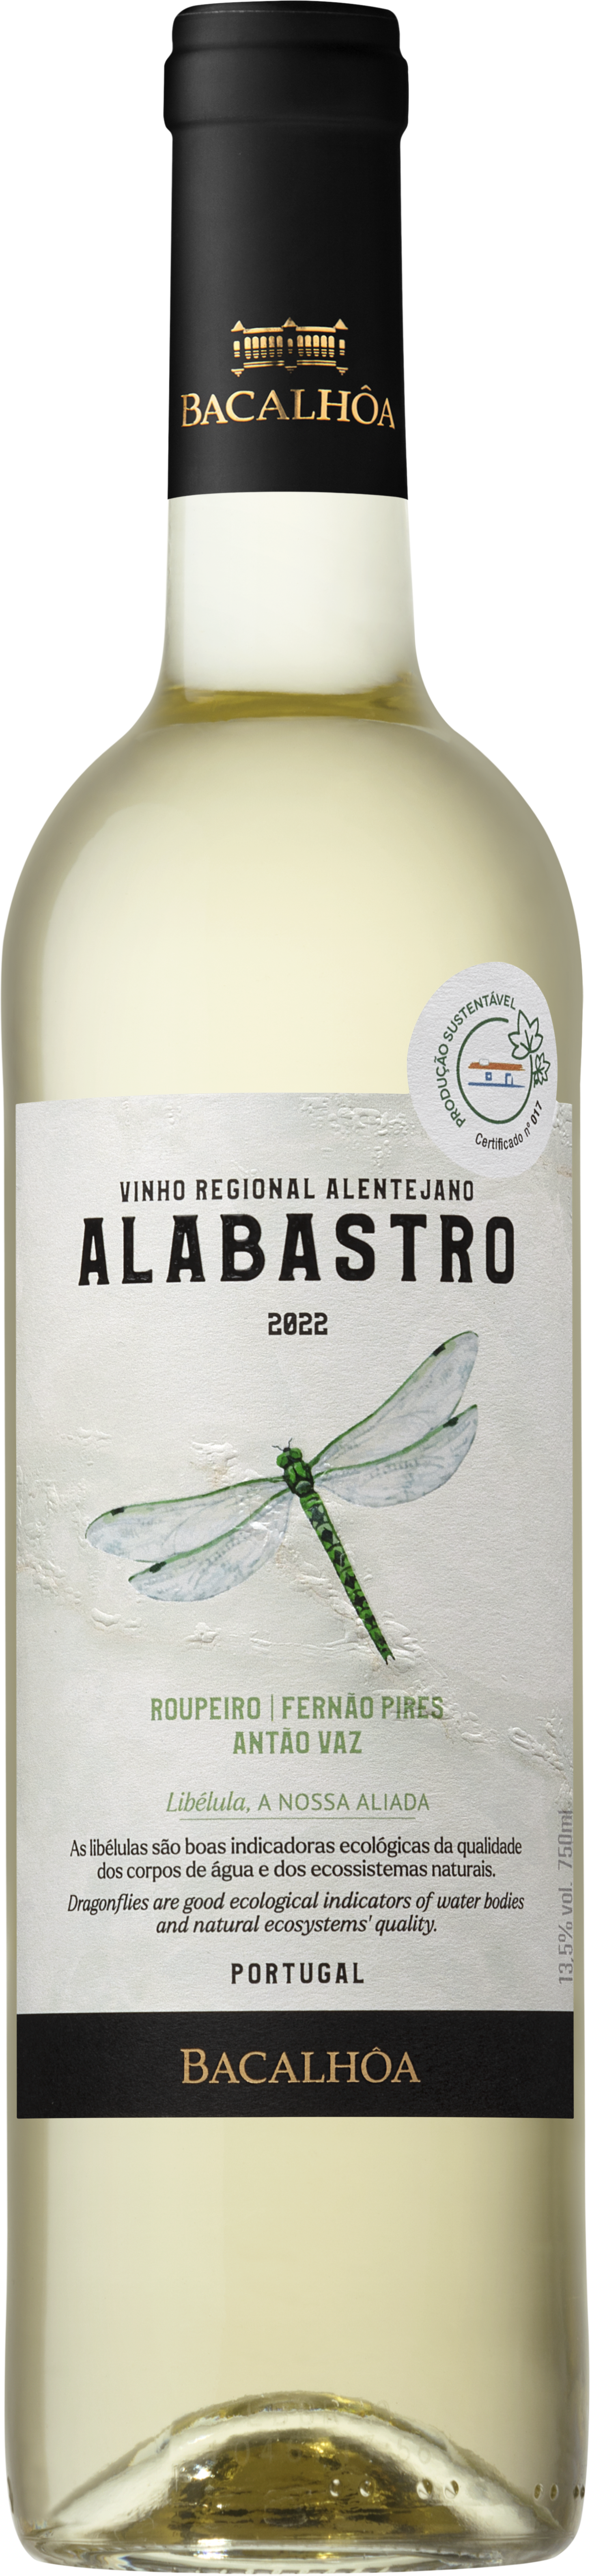 Alabastro White